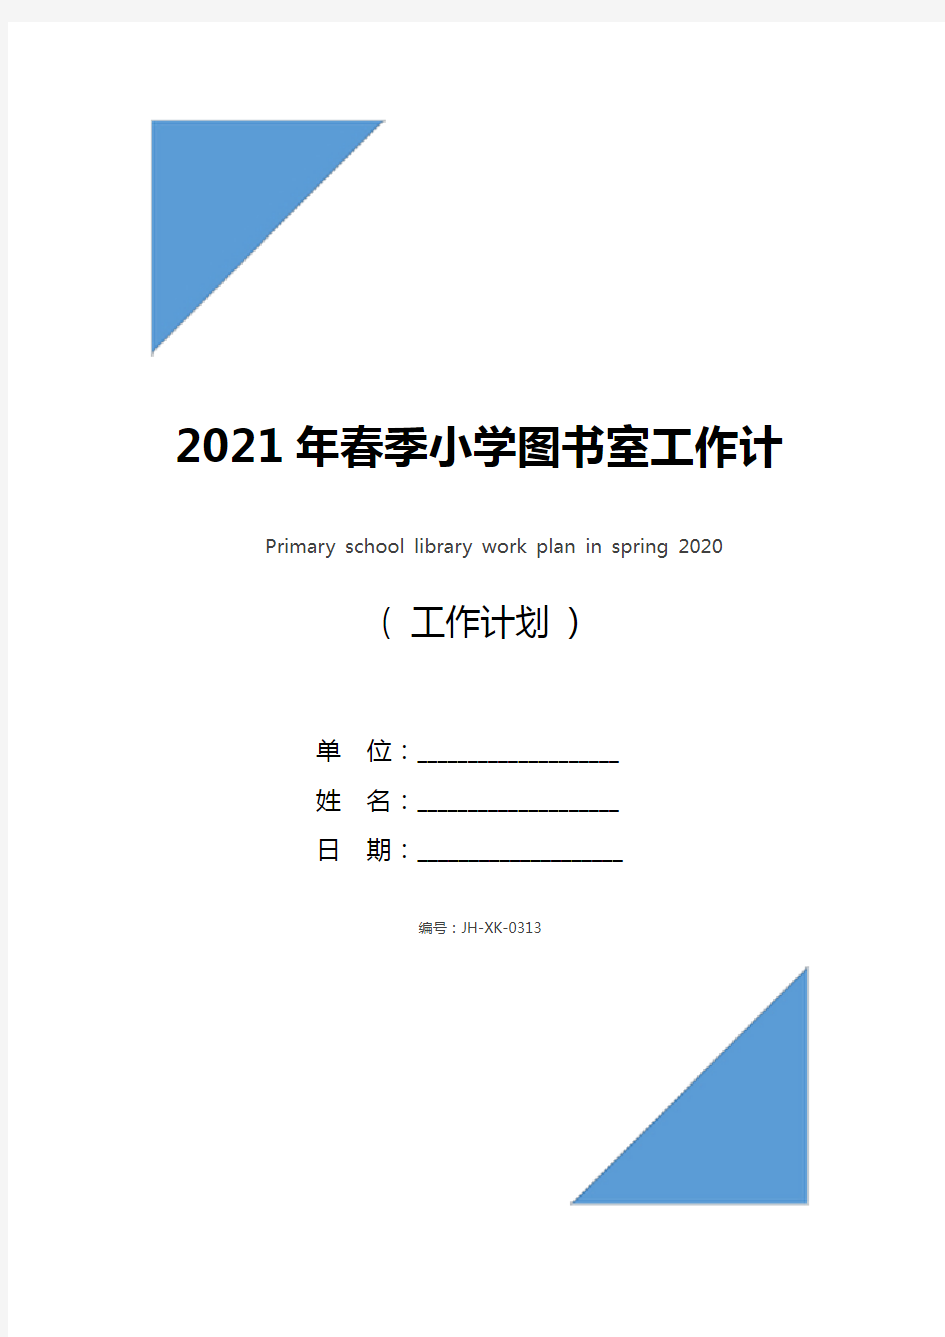 2021年春季小学图书室工作计划(新版)